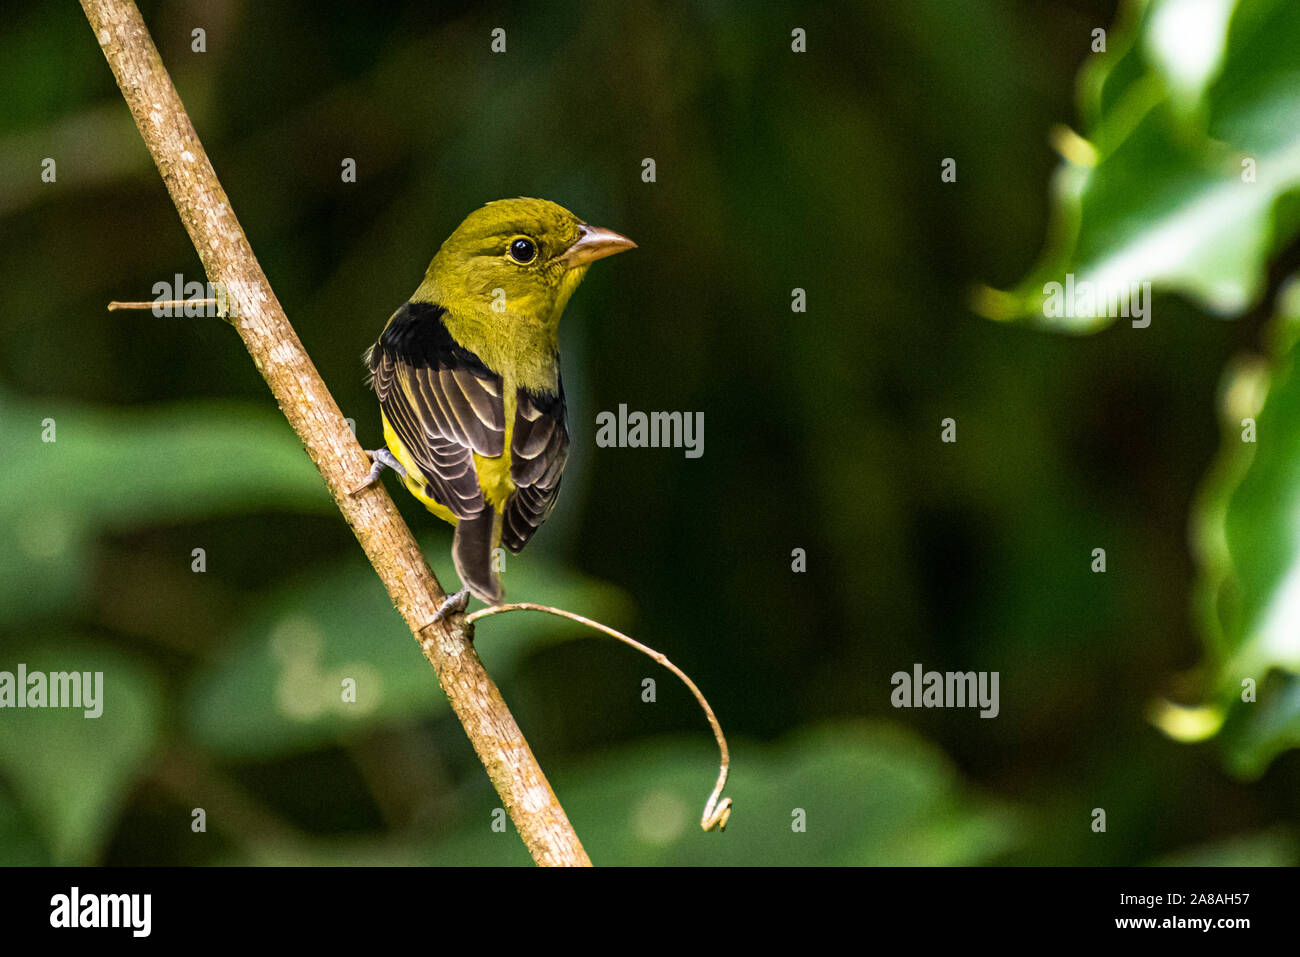 Poco verde oliva bird arroccato con sfondo verde scuro immagine presa in Panama Foto Stock